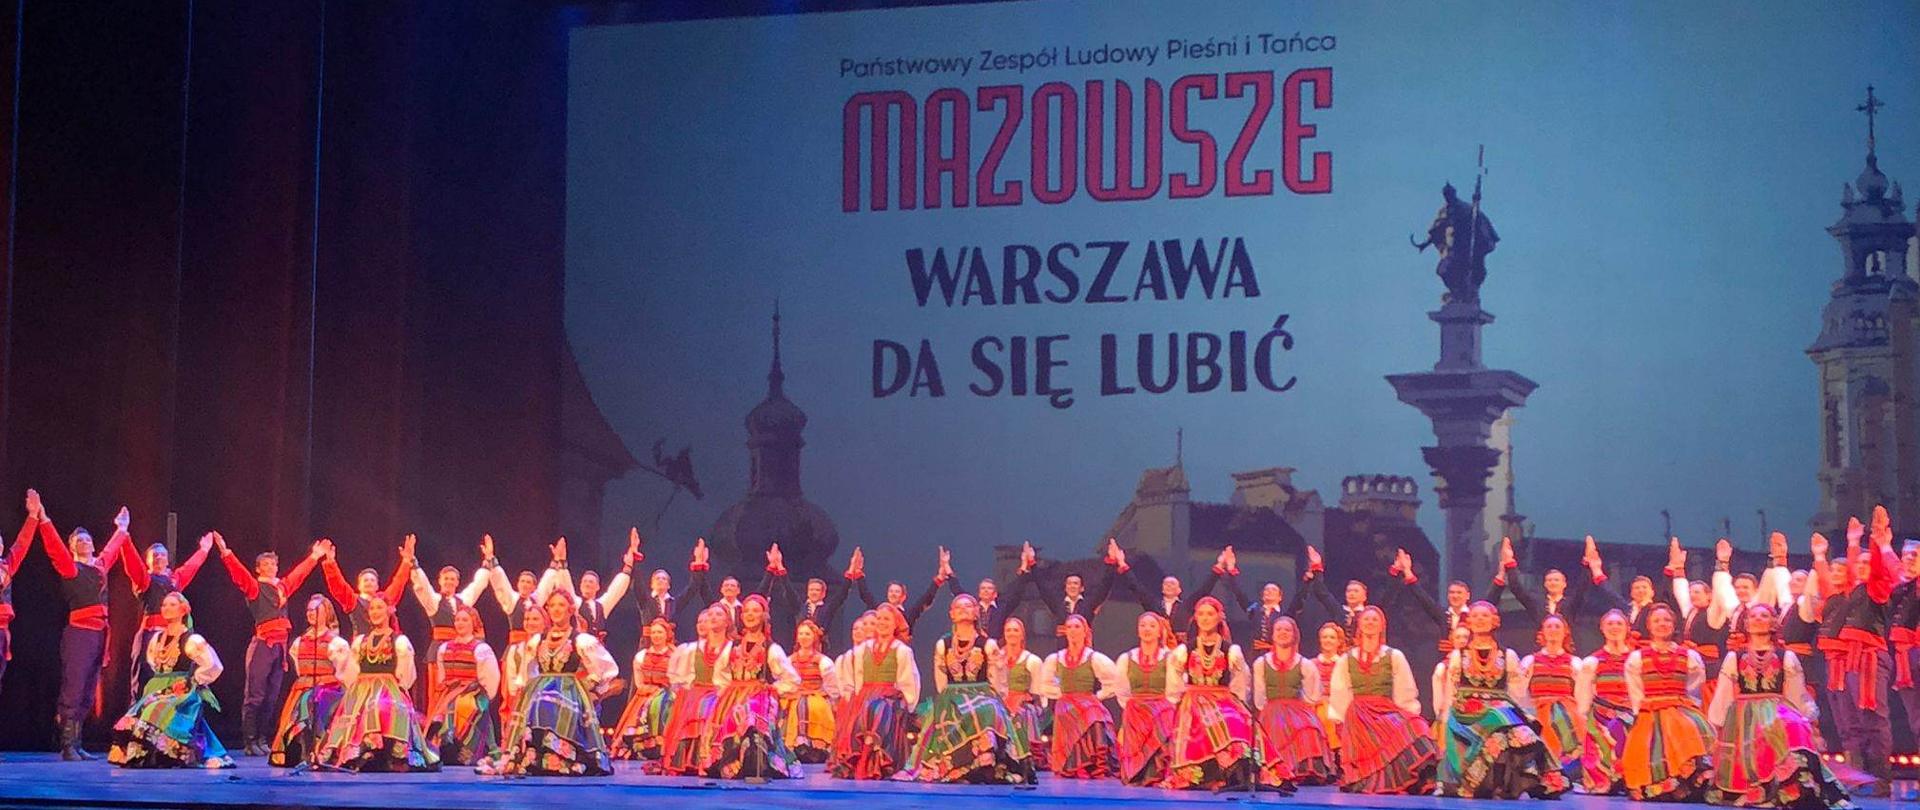 Zdjęcie sceny finałowej występu Państwowego Zespołu Ludowego Pieśni i Tańca Mazowsze w Teatrze Wielkim Operze Narodowej w Warszawie. Tancerki klęczą na jednym kolanie, z tyłu tancerze z podniesionymi rękoma ku górze.